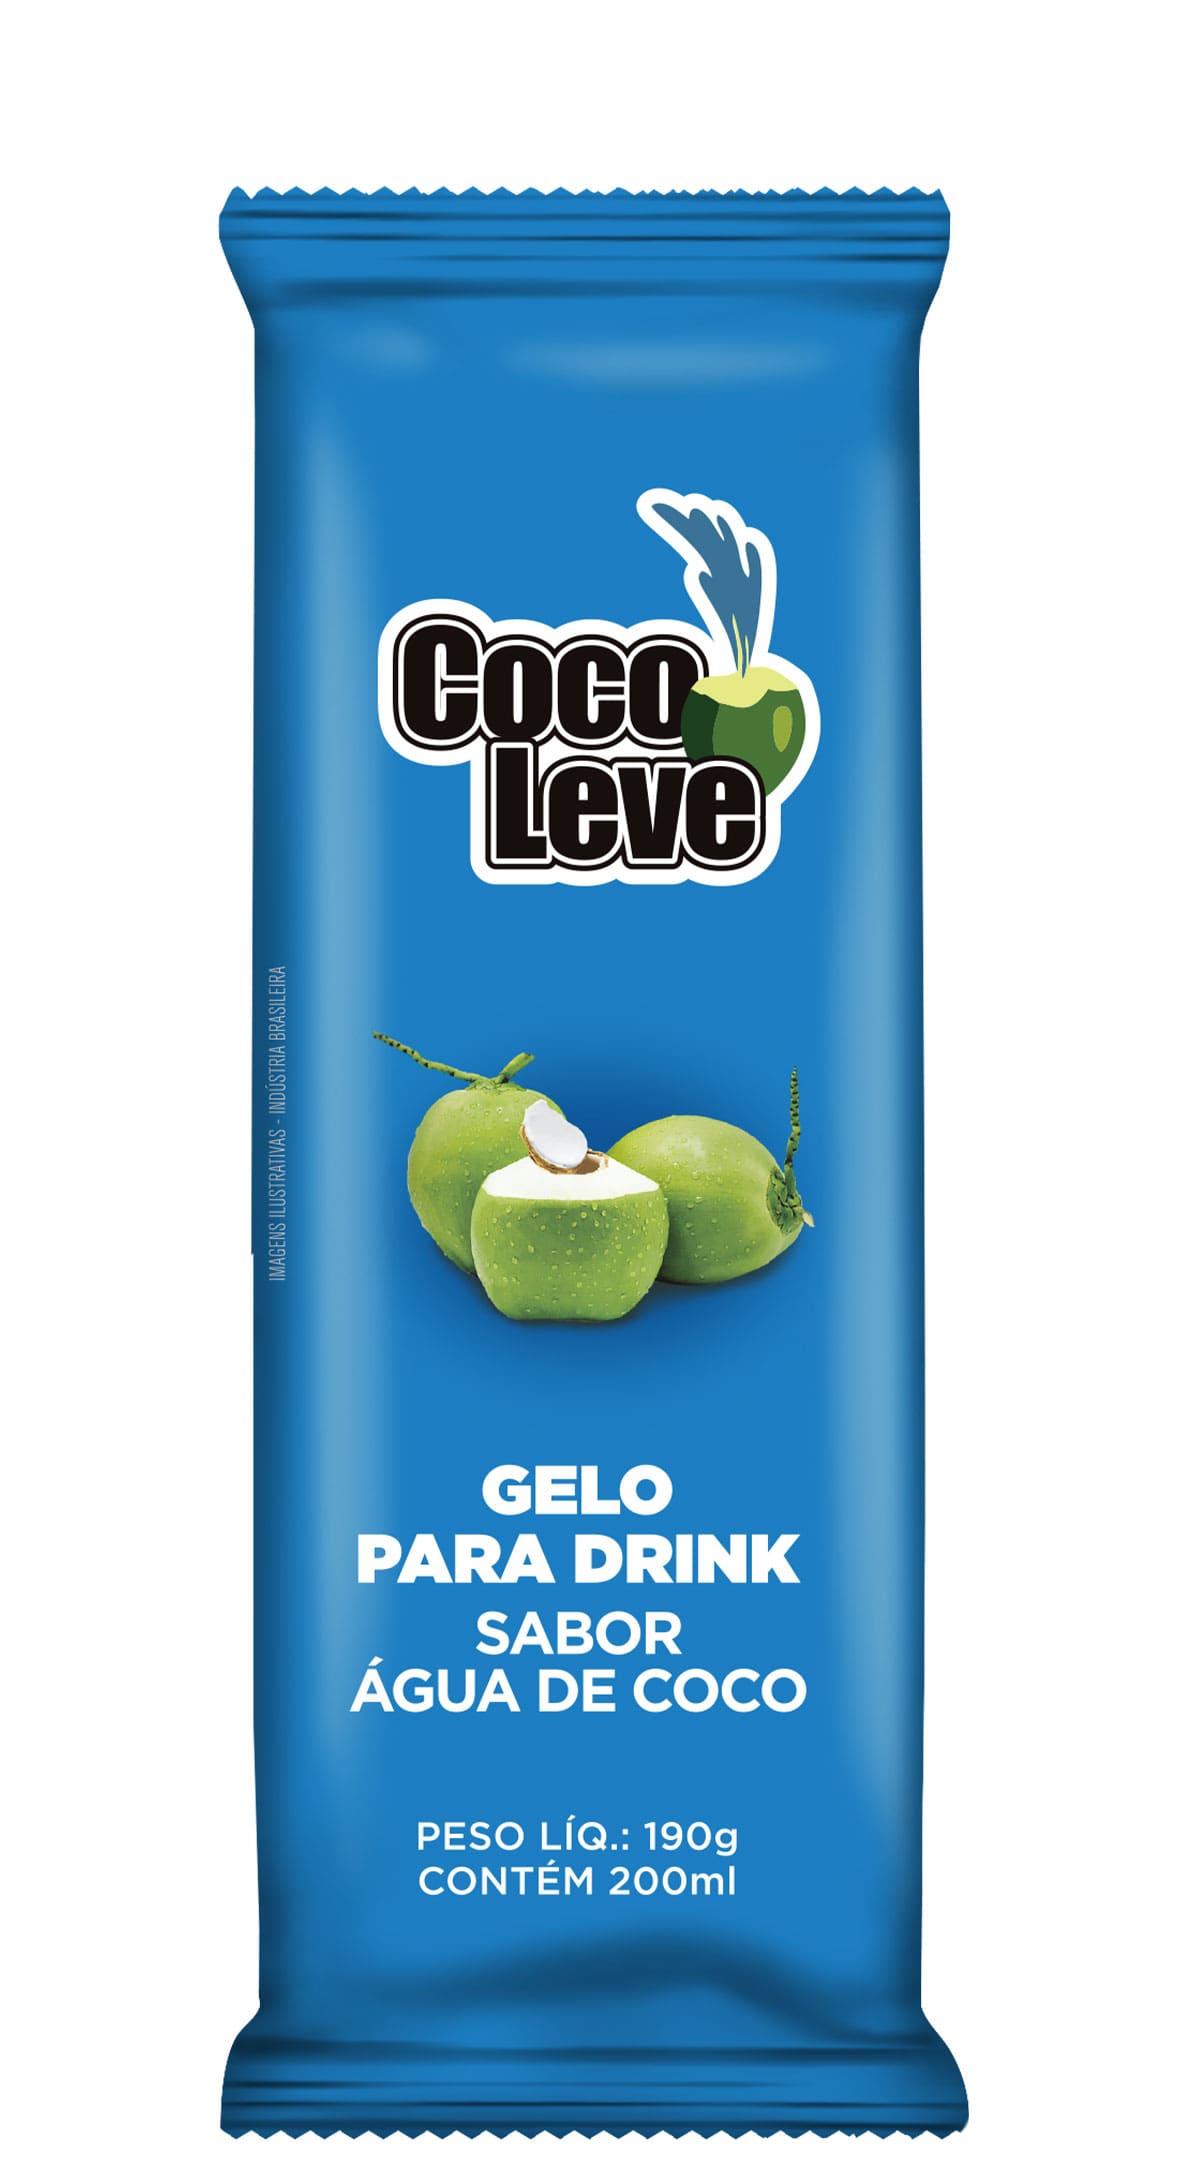 Gelo de Côco – Mais sabor para os seus drinks!